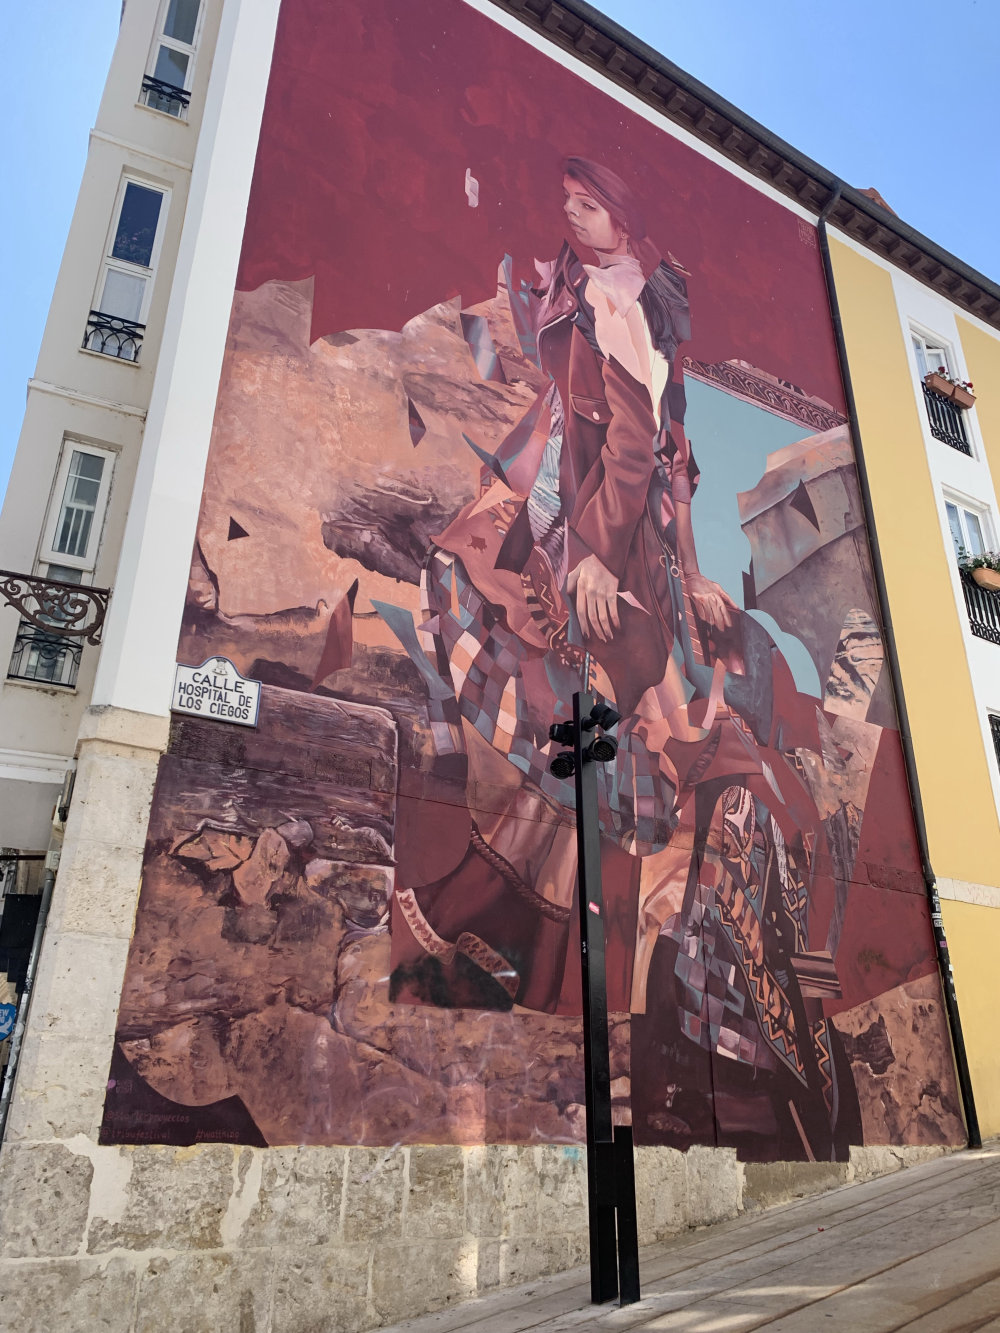 mural in Burgos by artist unknown.